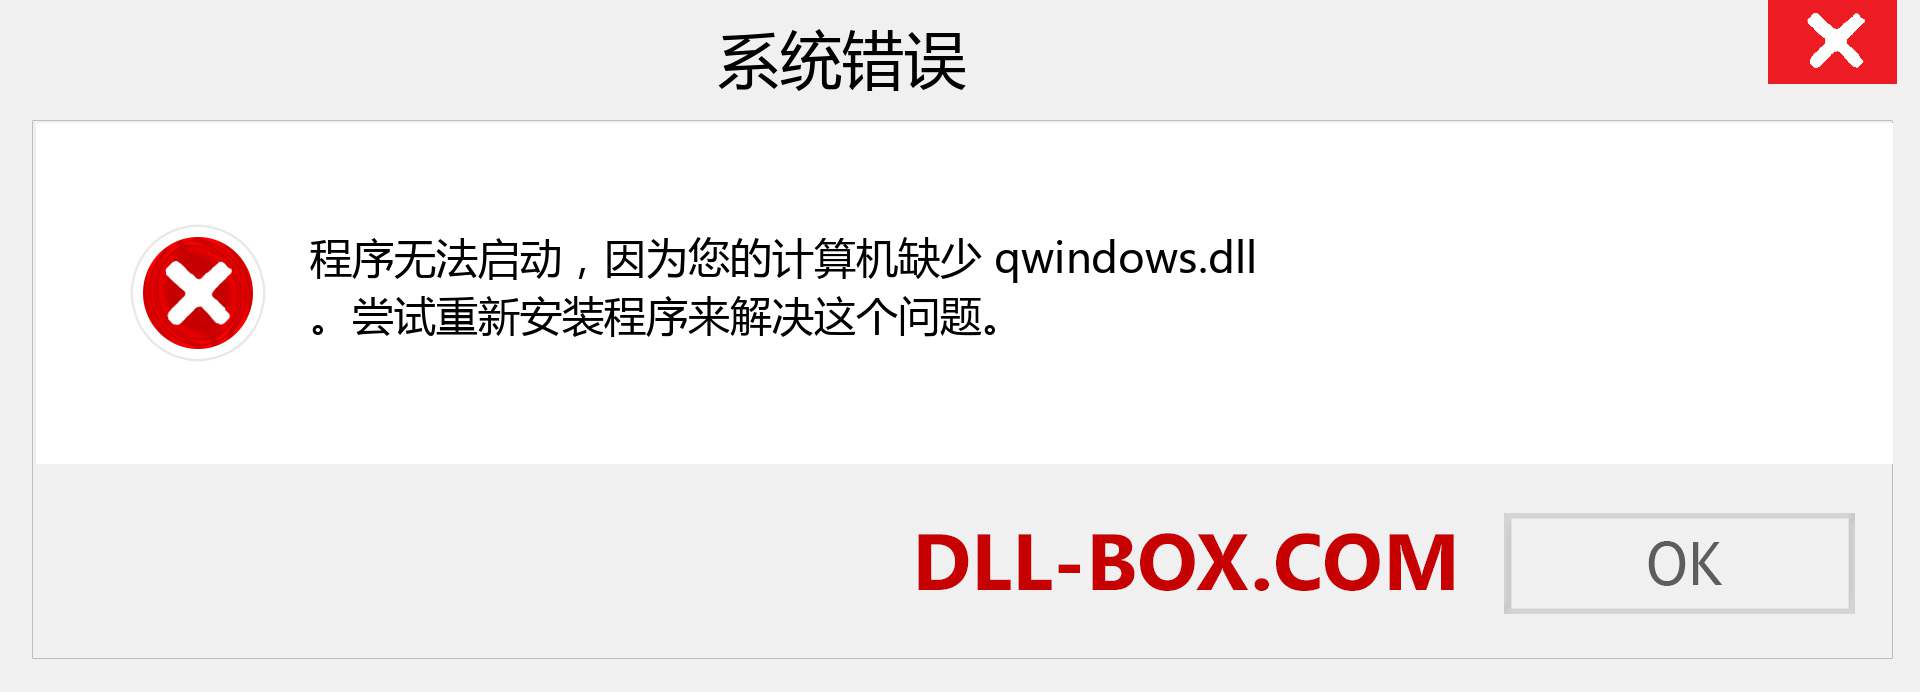 qwindows.dll 文件丢失？。 适用于 Windows 7、8、10 的下载 - 修复 Windows、照片、图像上的 qwindows dll 丢失错误